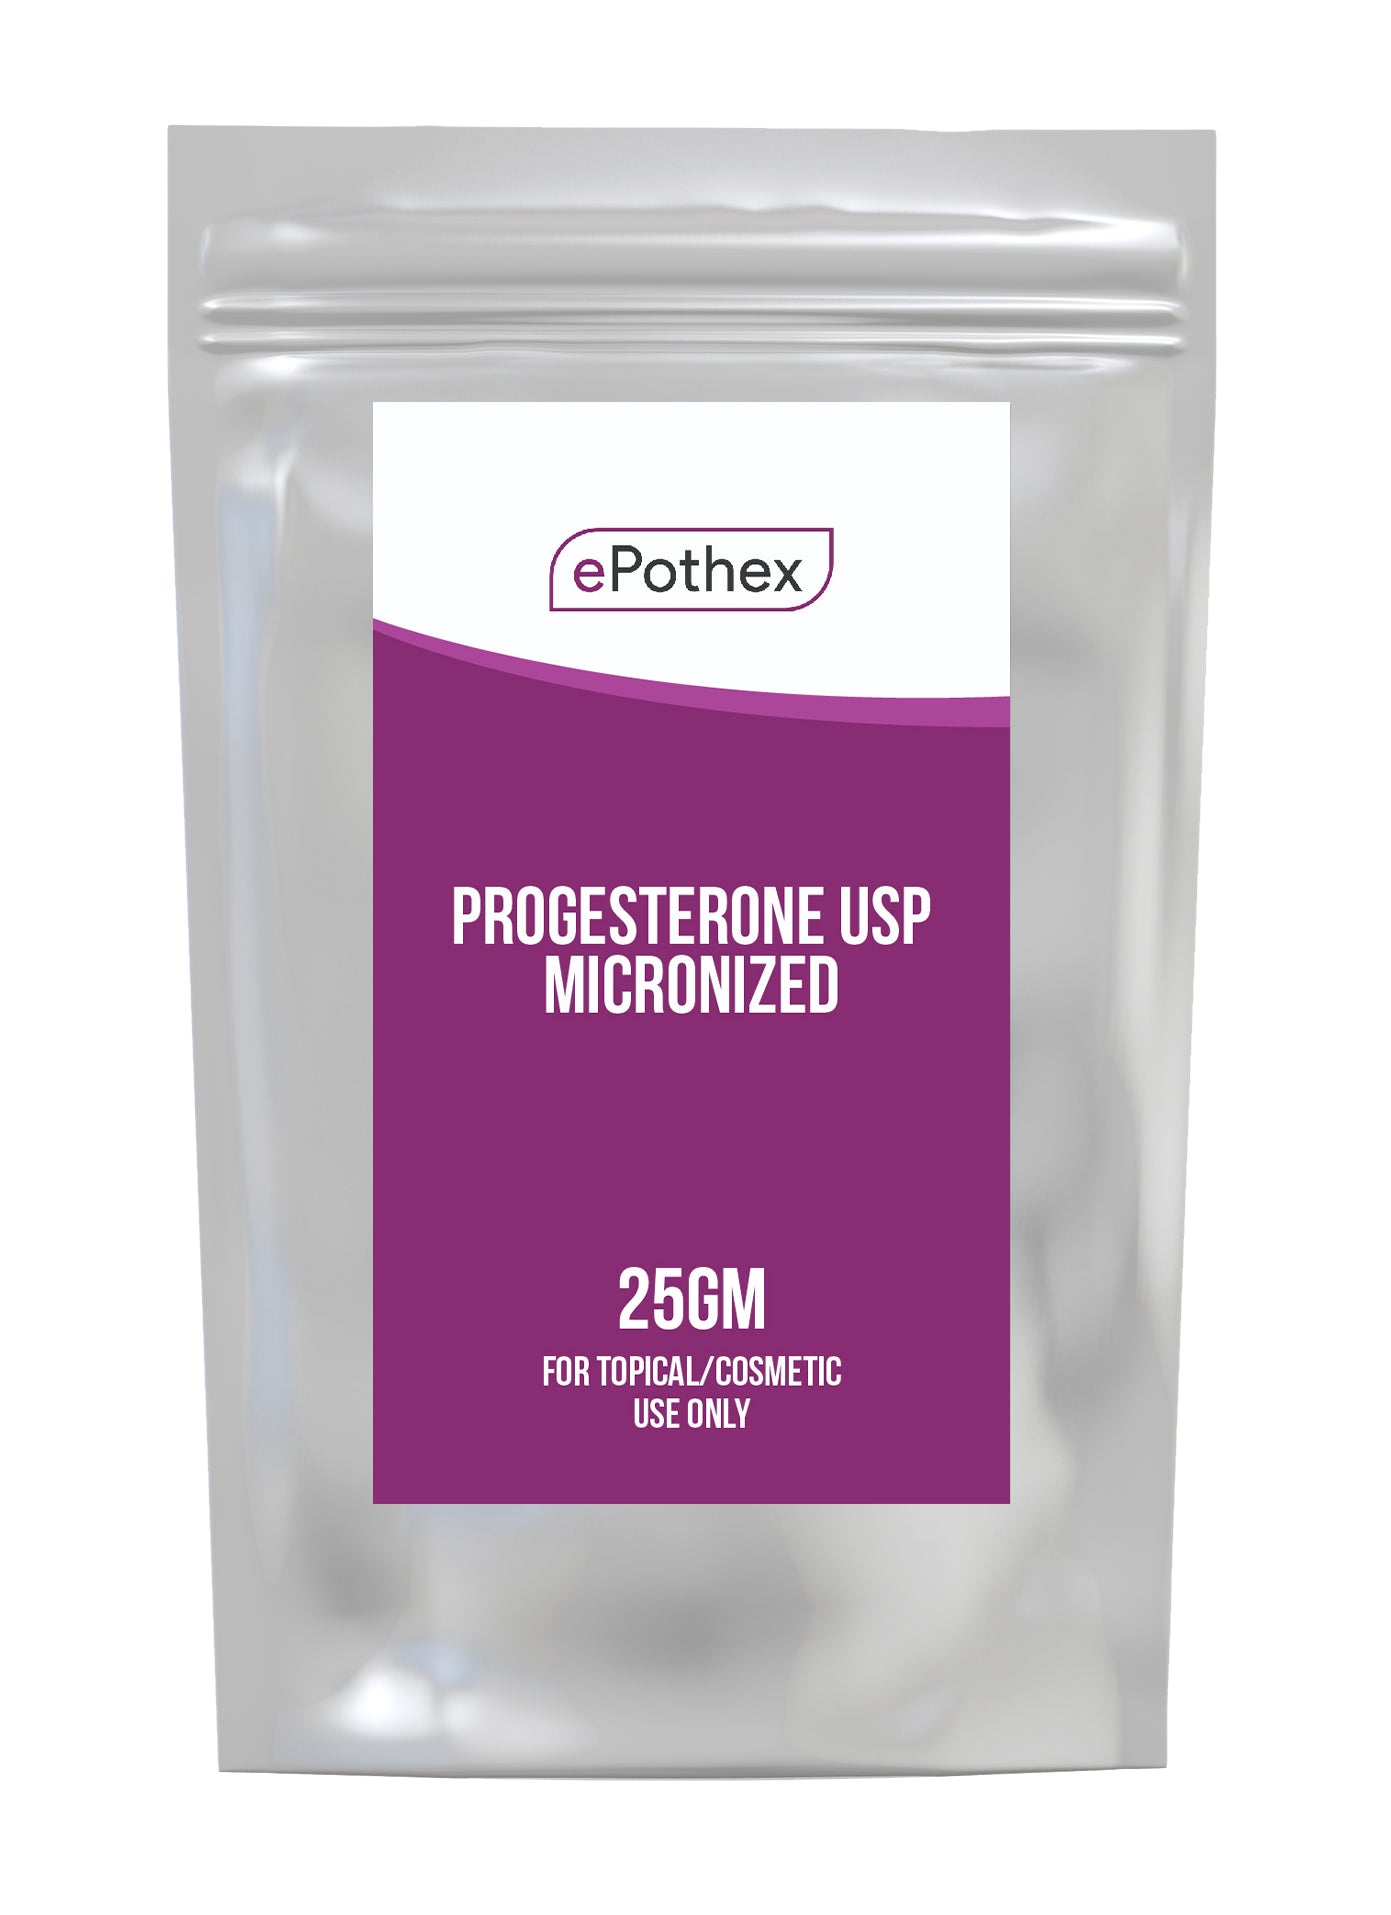 Progesterone Powder USP - Bioidentical Micronized - 25g Powder